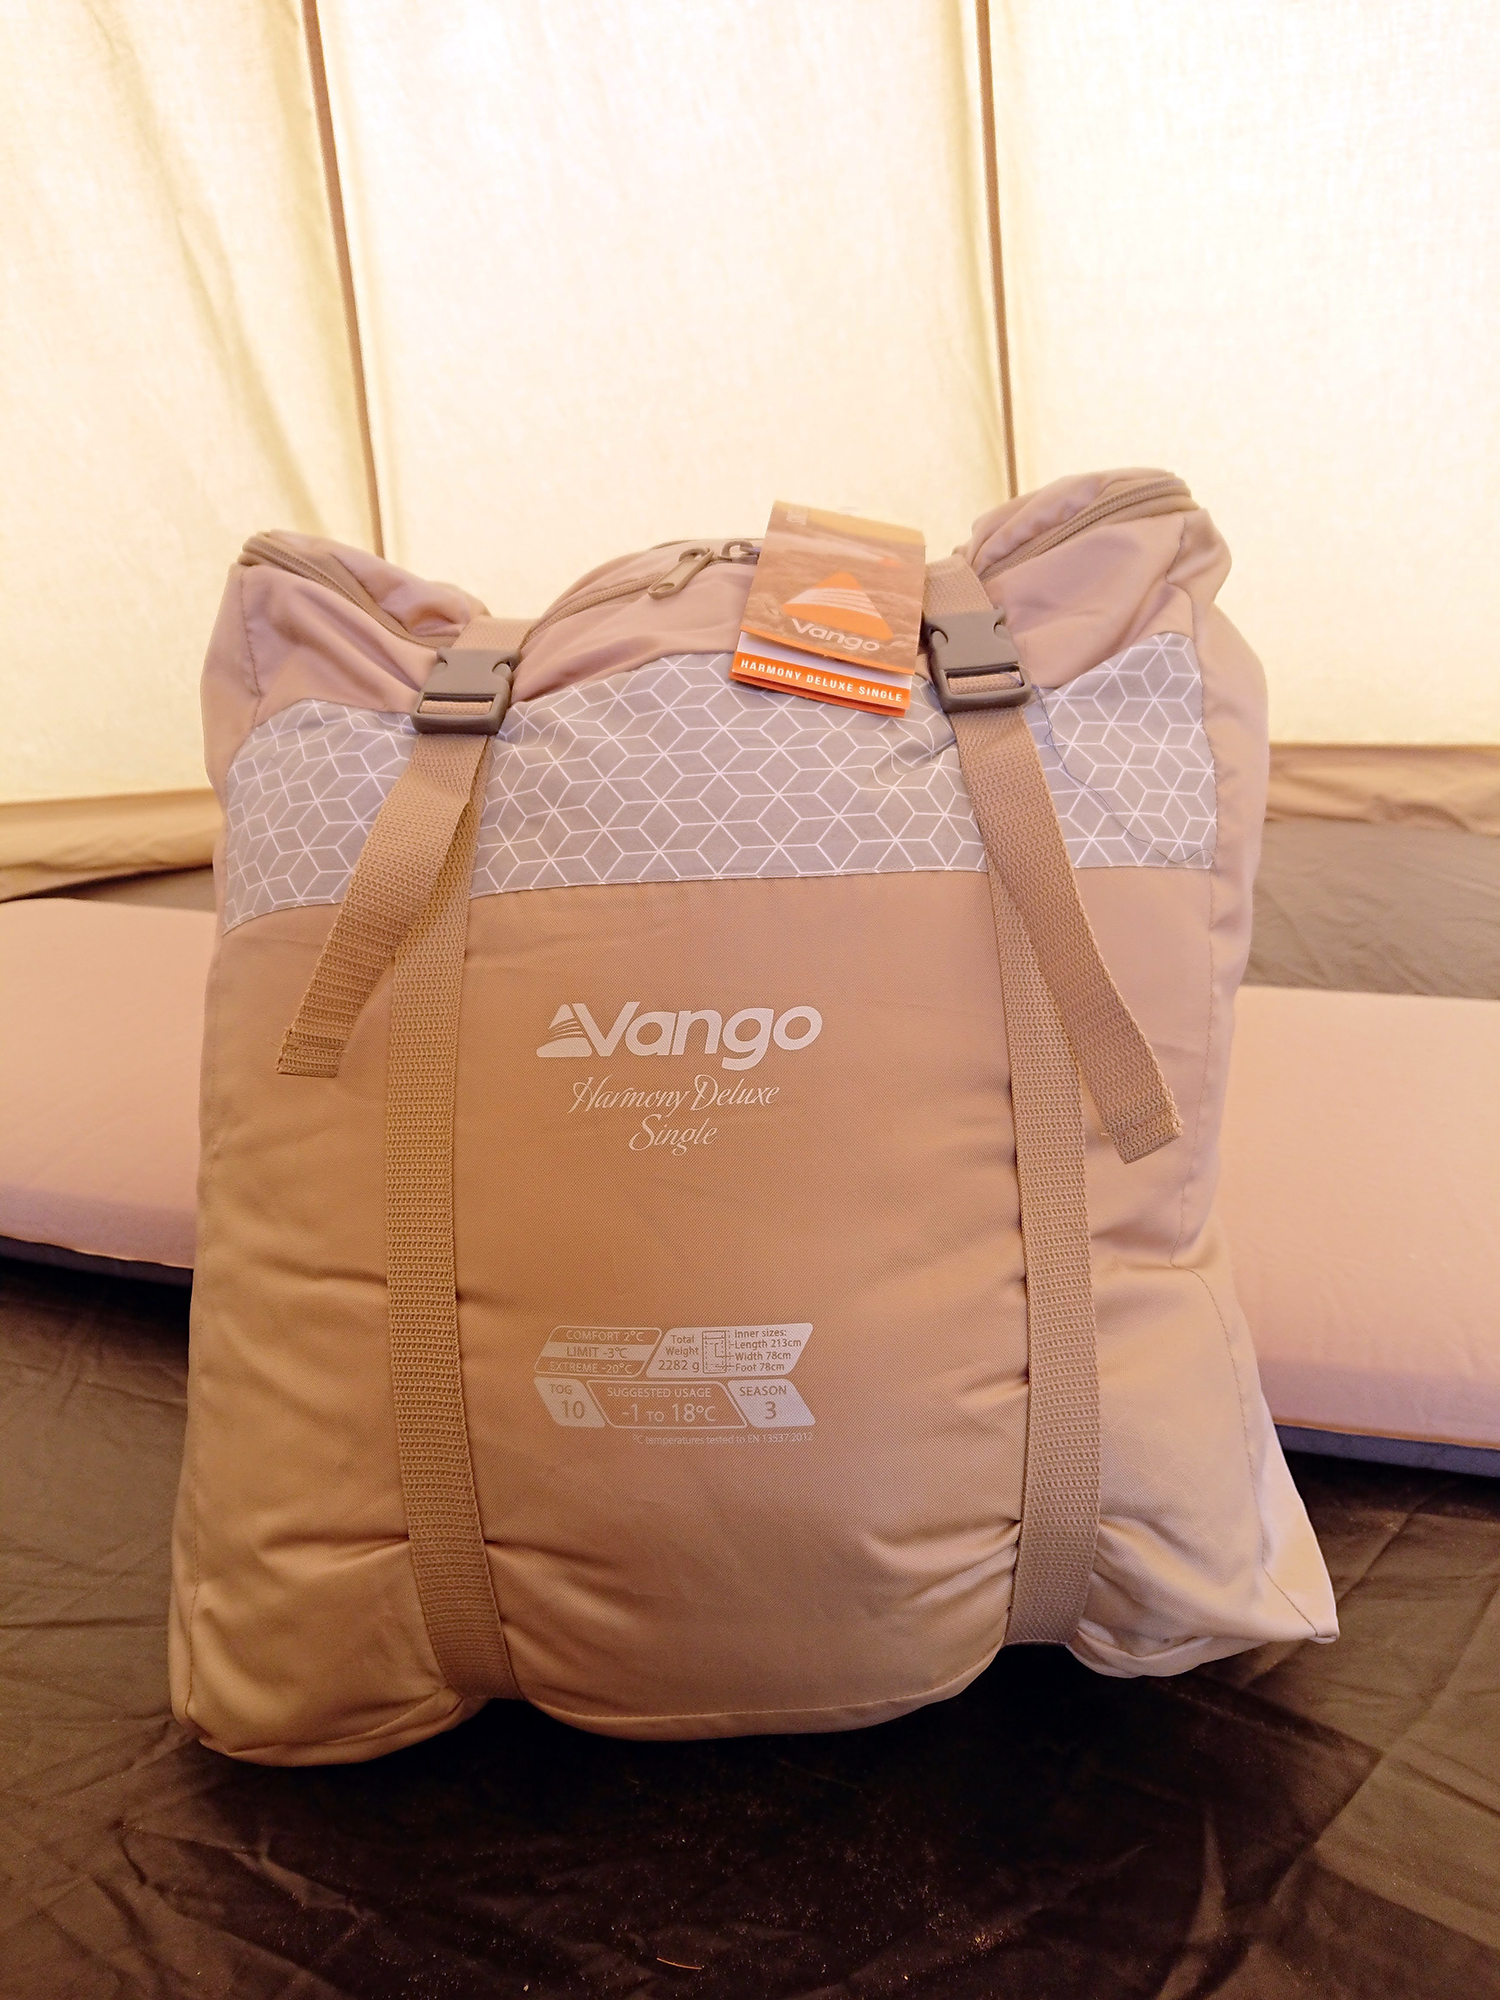 Vango Harmony Deluxe Sleeping Bag